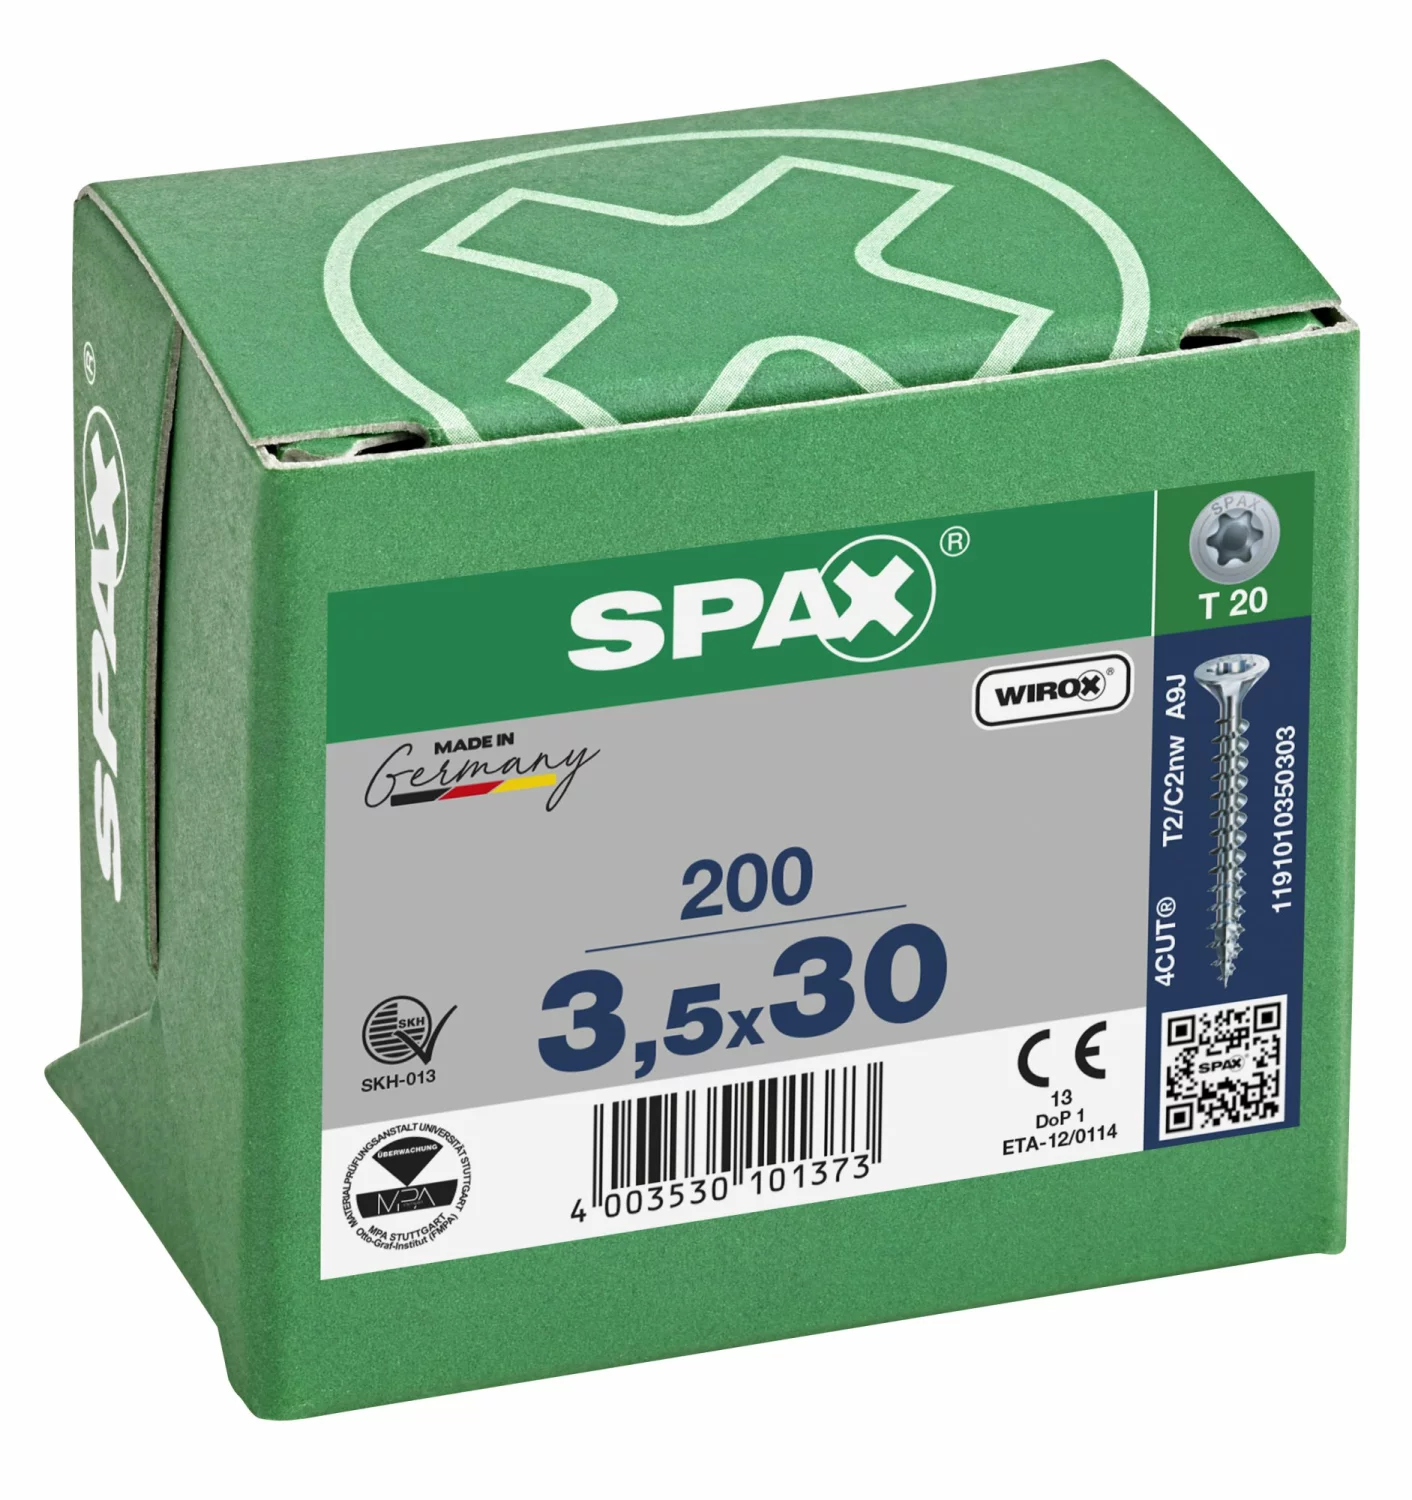 SPAX 1191010350303 - Vis universelle, 3,5 x 30 mm, 200 pièces, Tête centrante, Tête fraisée, T-STAR plus T20, 4CUT, WIROX